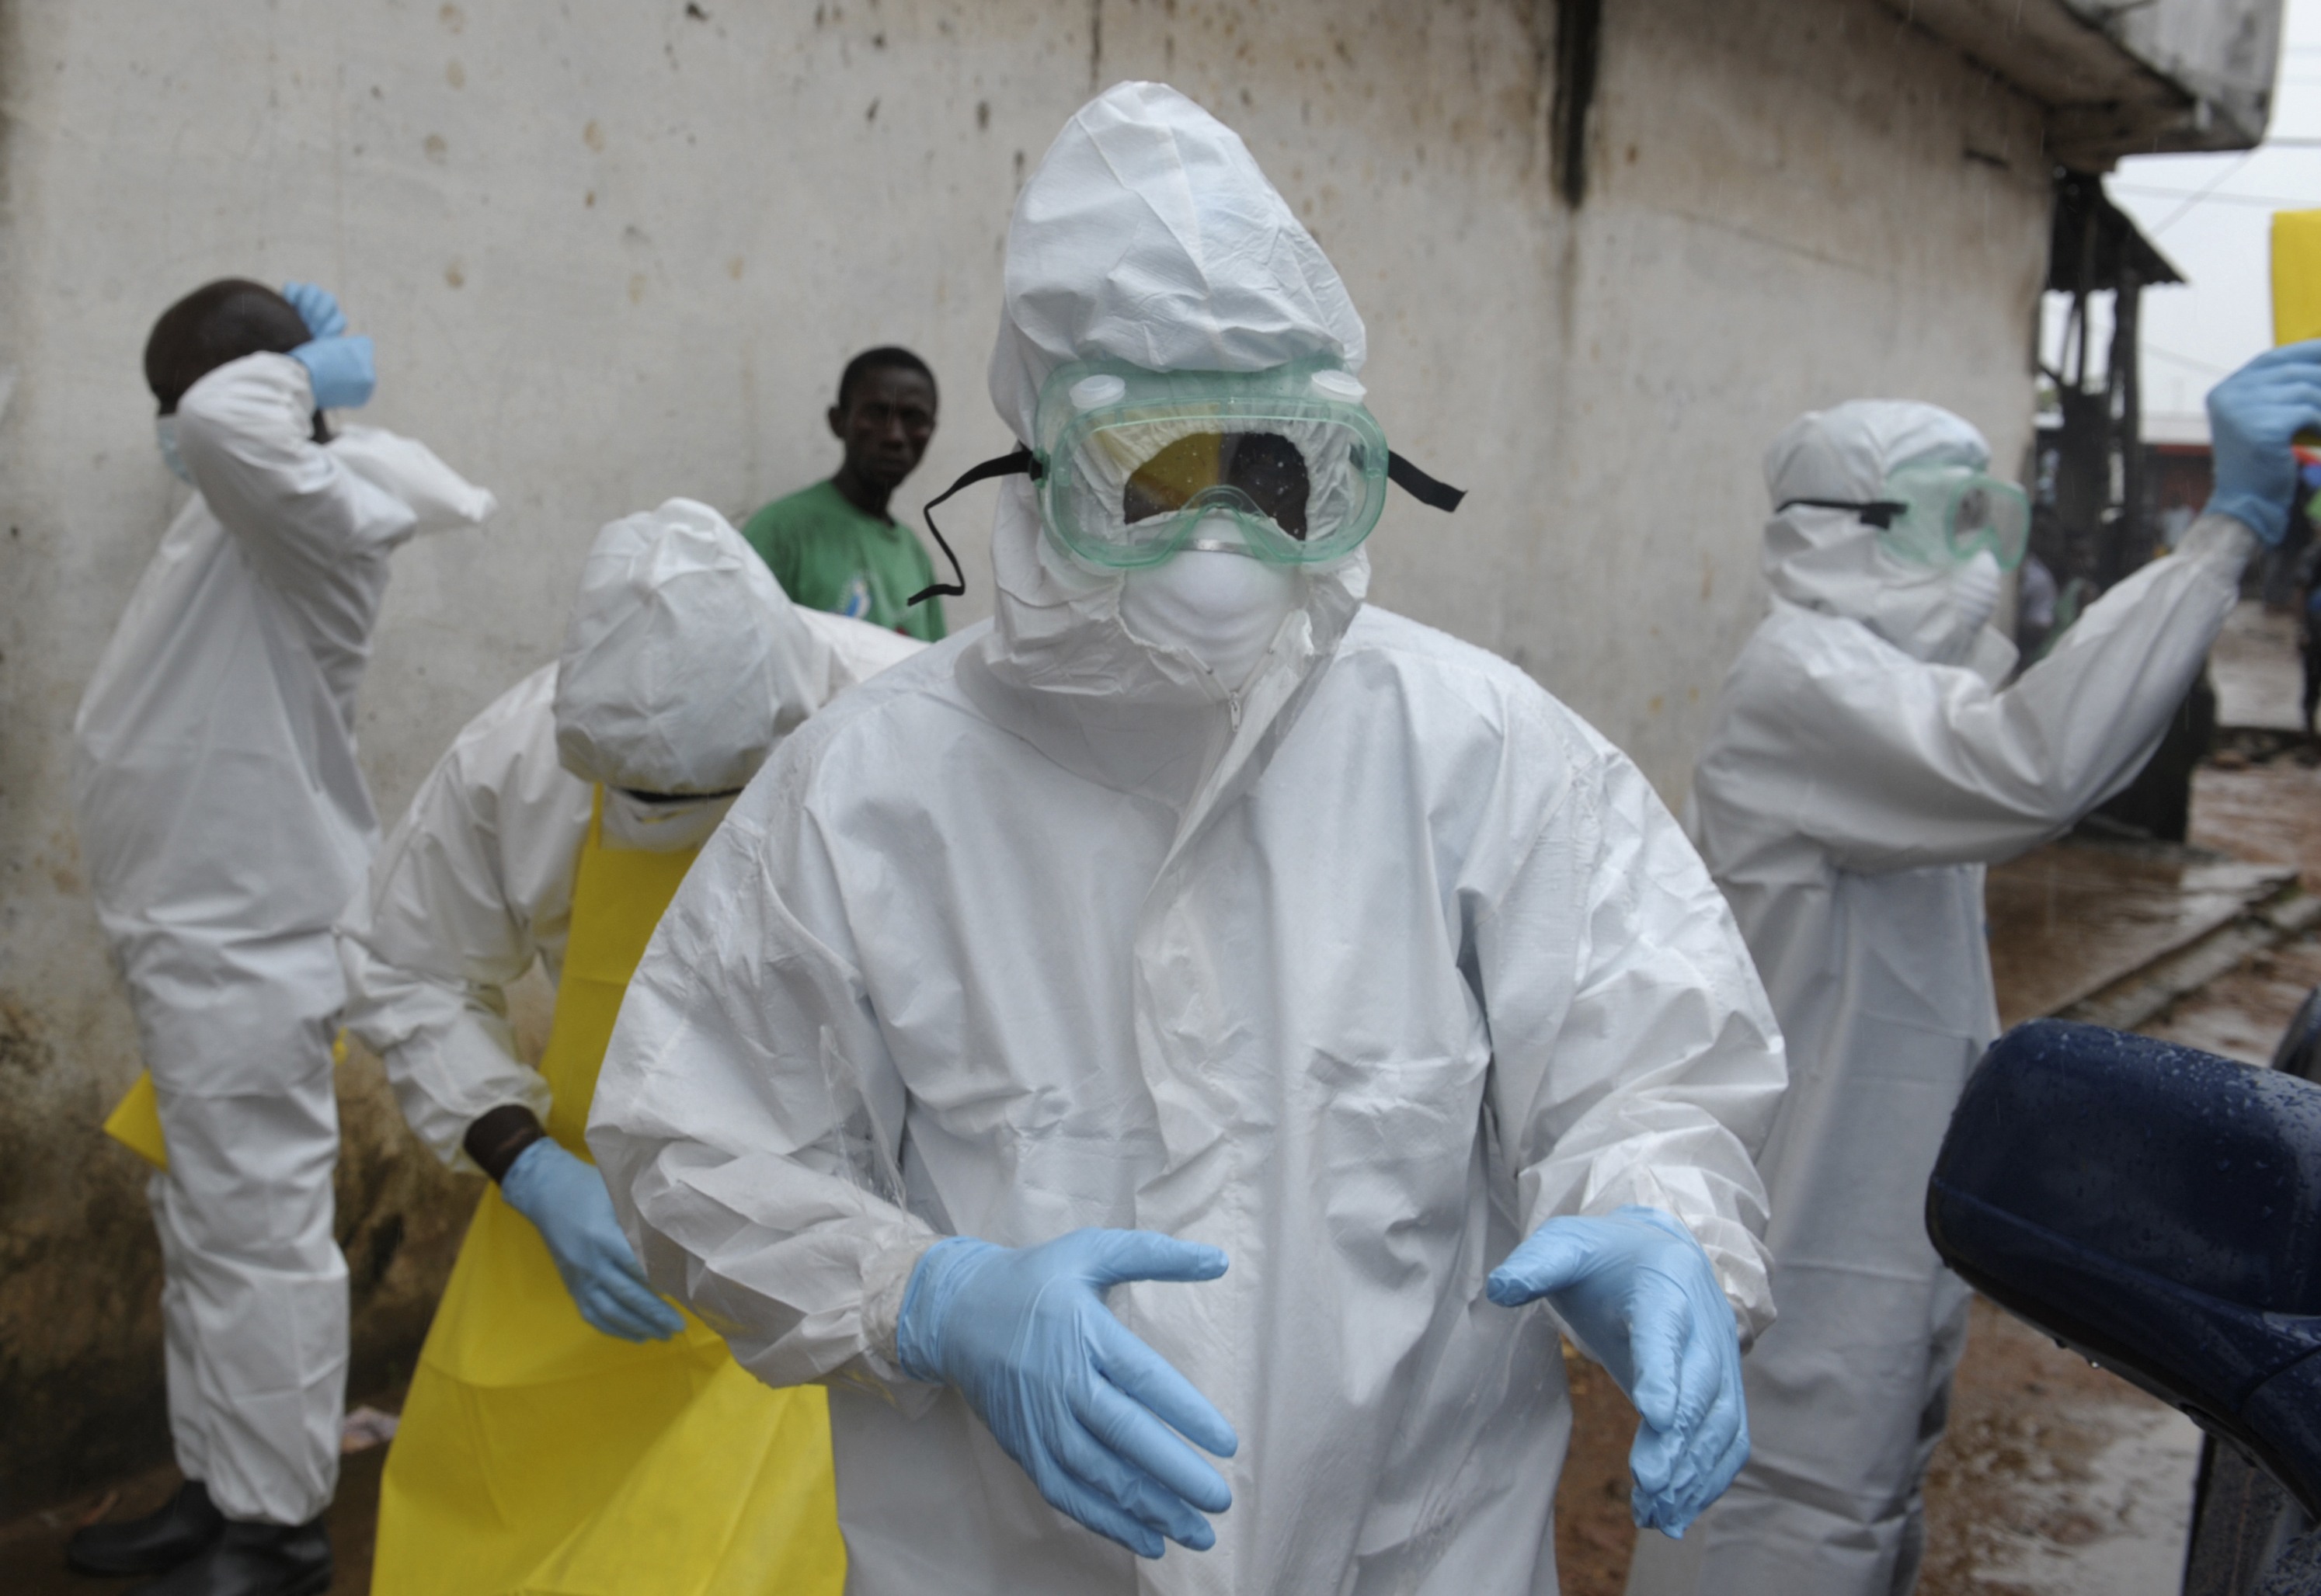 Médico liberiano muere por ébola luego de ser tratado con suero experimental